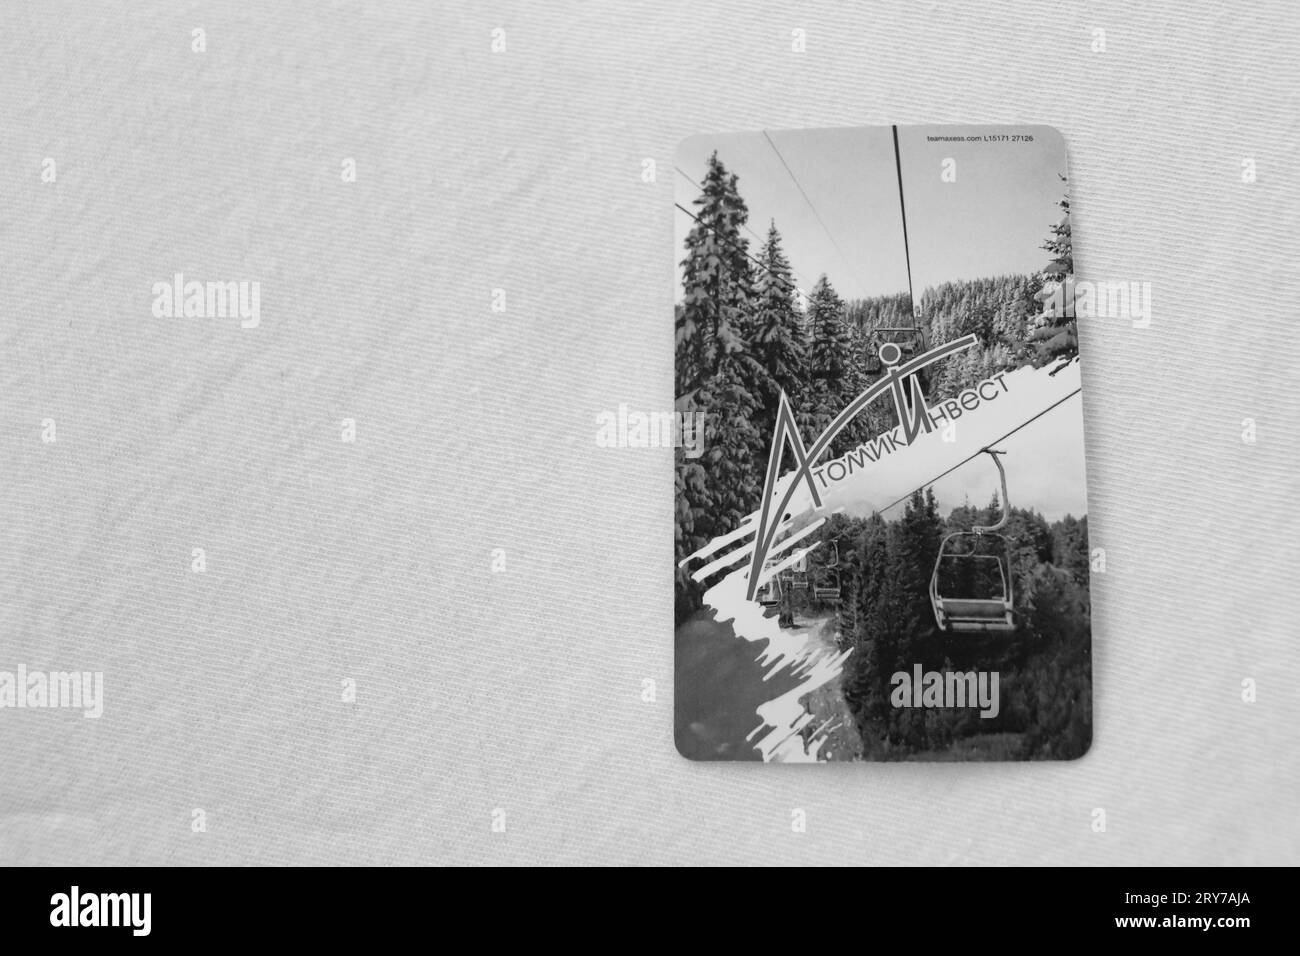 Biglietto d'ingresso per lo skilift su sfondo bianco e nero dei sette laghi di Rila, famosa attrazione escursionistica per i laghi glaciali Foto Stock